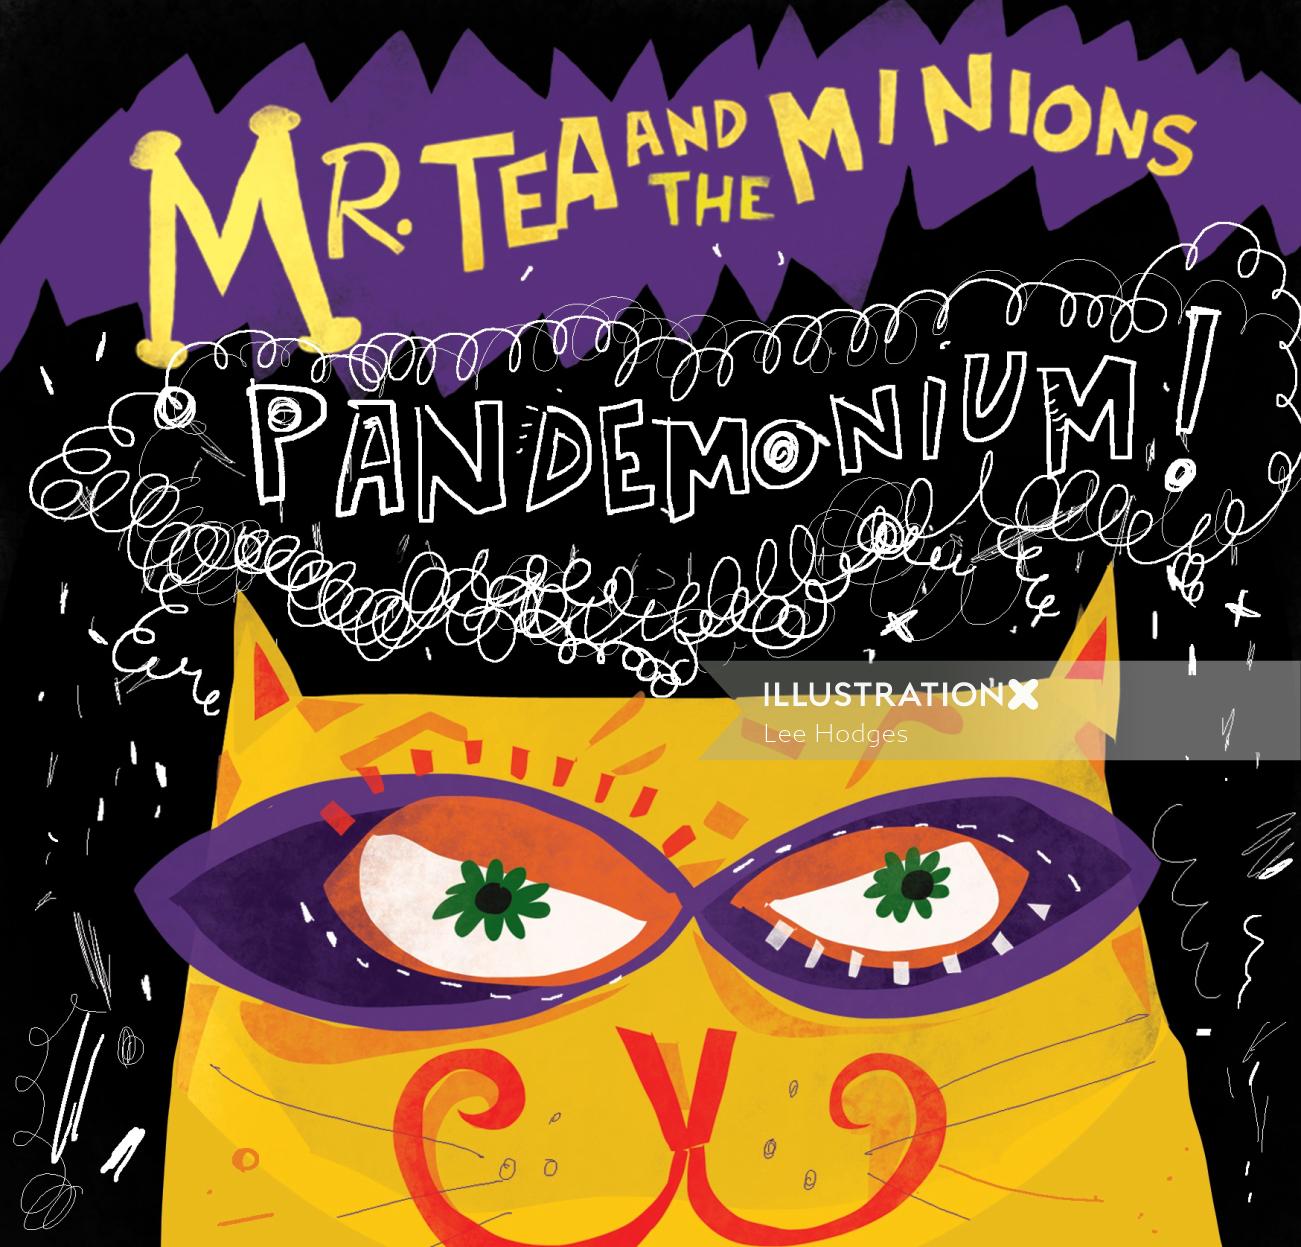 Arte de portada musical de Mr. Tea and the Minions Pandemonium